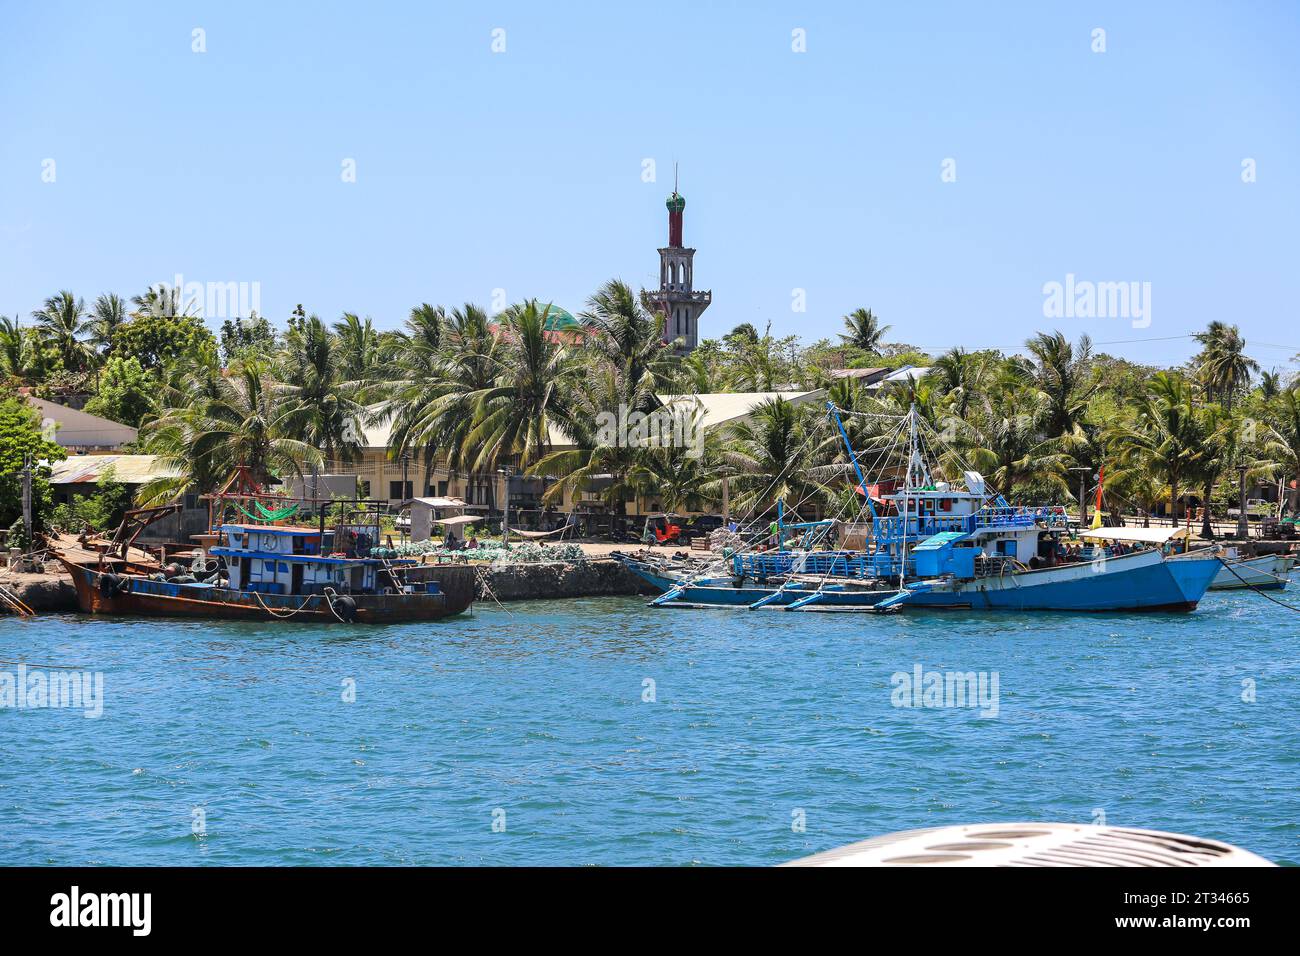 Hagnayah Masjid (mosquée musulmane) et bateaux de pêche traditionnels bangka sur la côte de Punta, Hagnaya, île de Cebu, région de Visayas, Philippines Banque D'Images